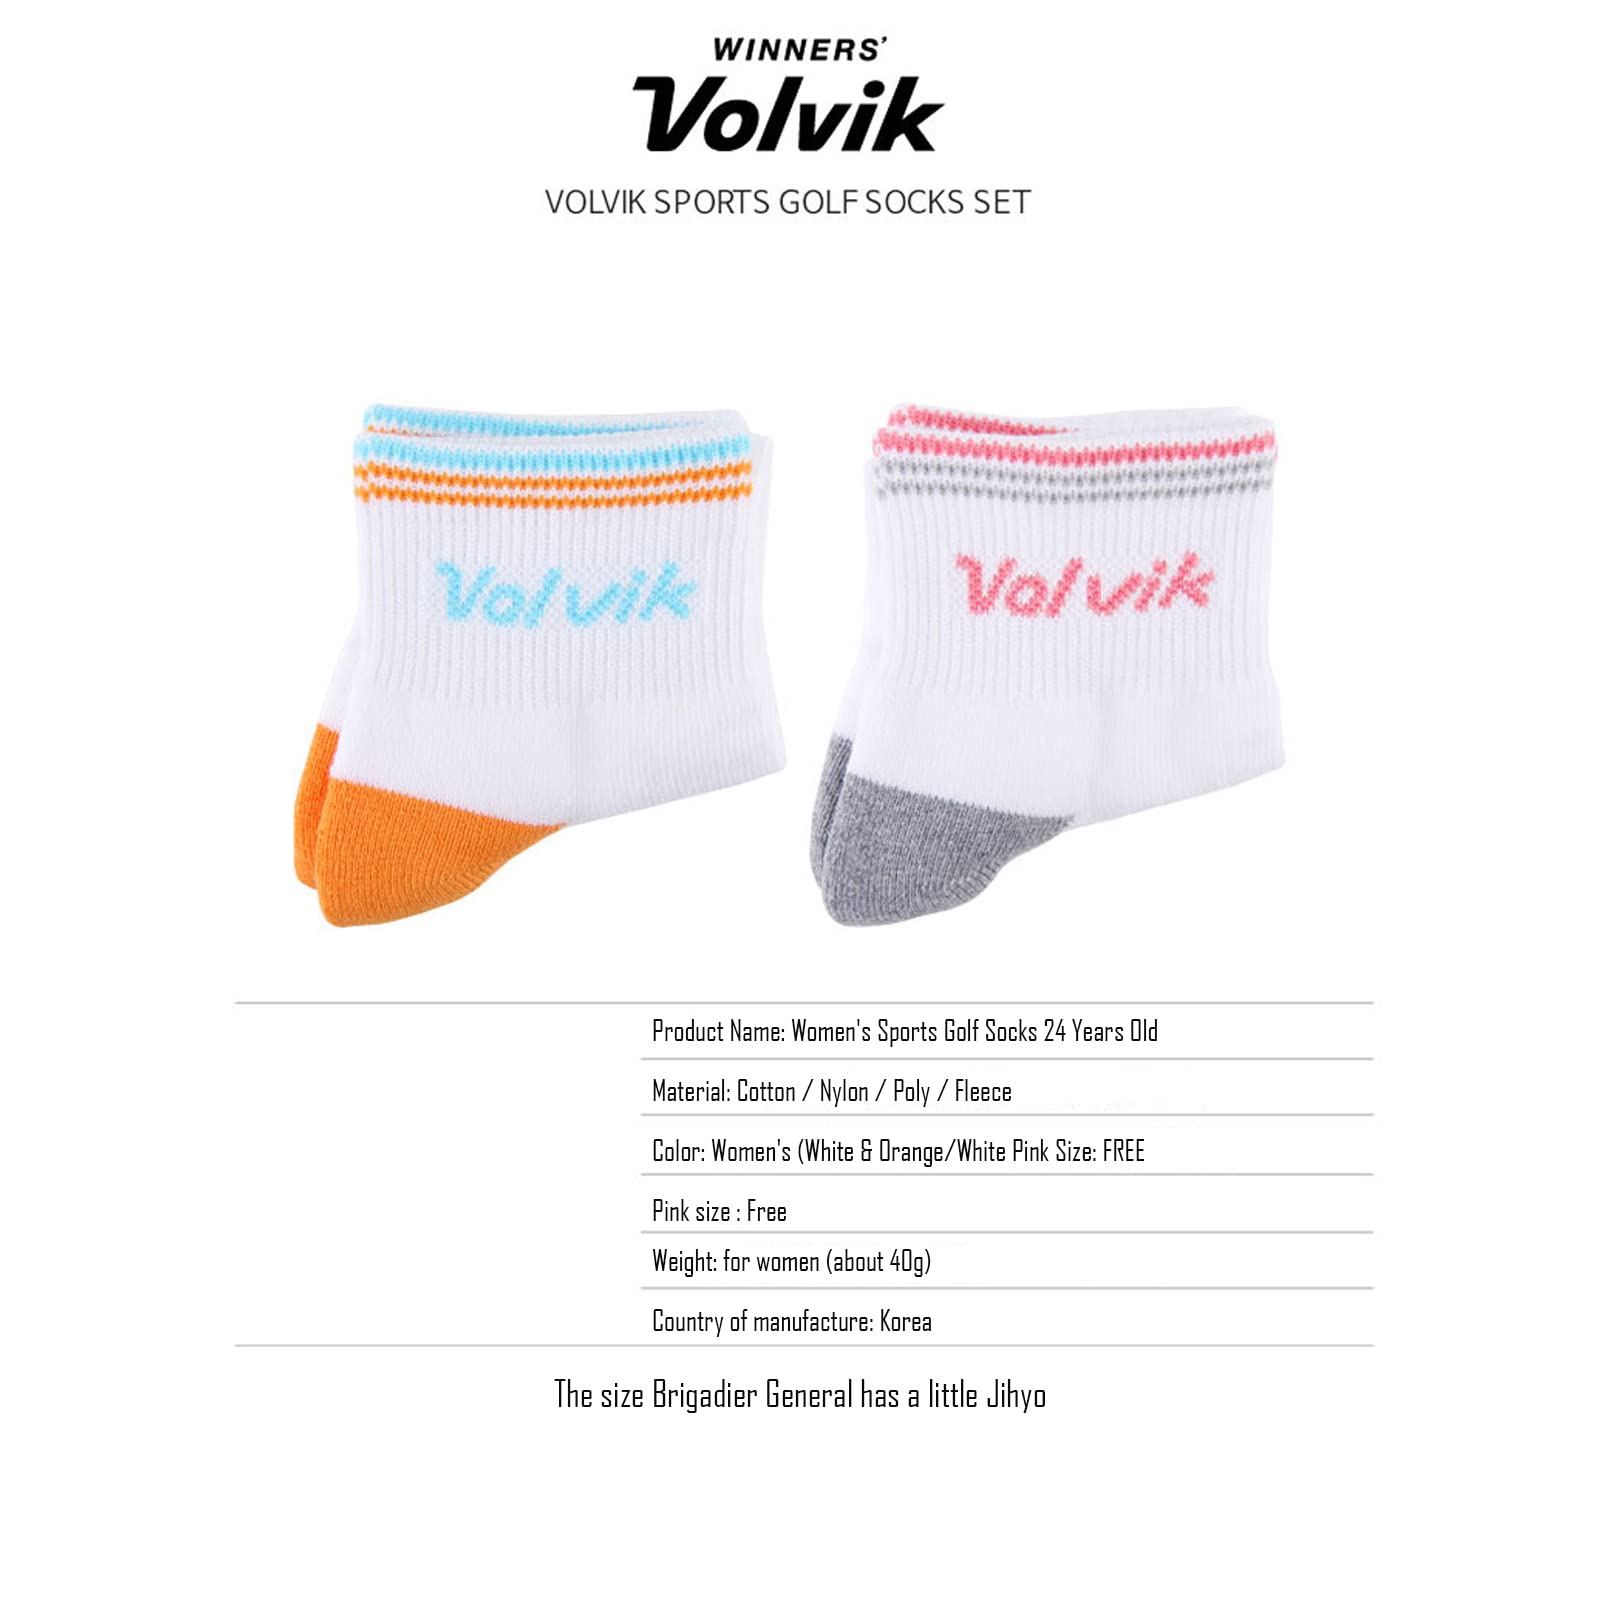 Volvik Women's Sports Single Wood 2-Piece Set Socks Footwear Cotton